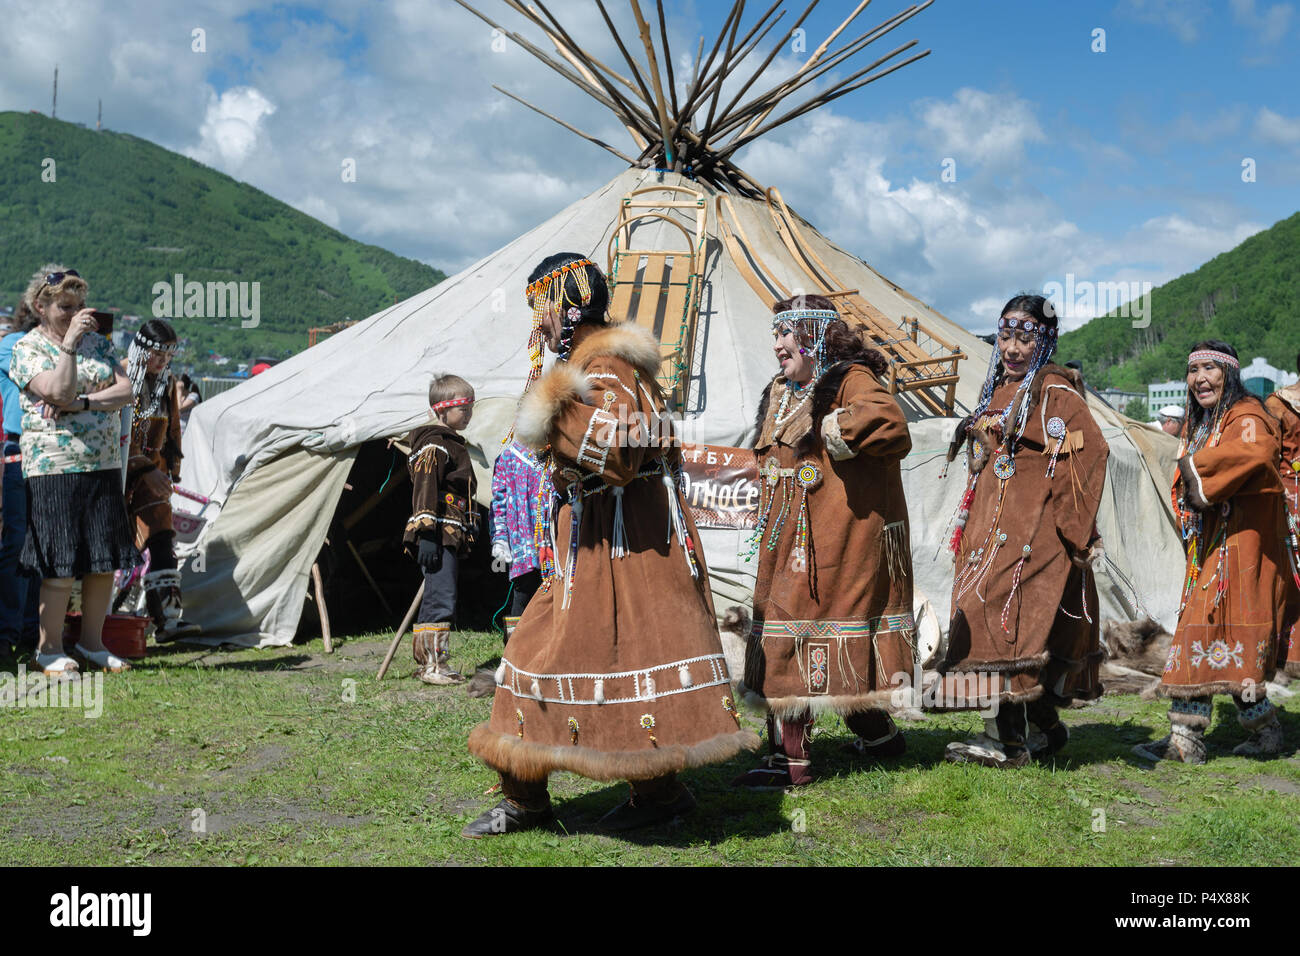 Gruppe der Frauen in den nationalen Kleidung Ureinwohner Kamtschatkas Ausdruck tanzen in der Nähe von yaranga. Öffentlichen Konzert nationale Folklore Tanz Gruppe. Stockfoto